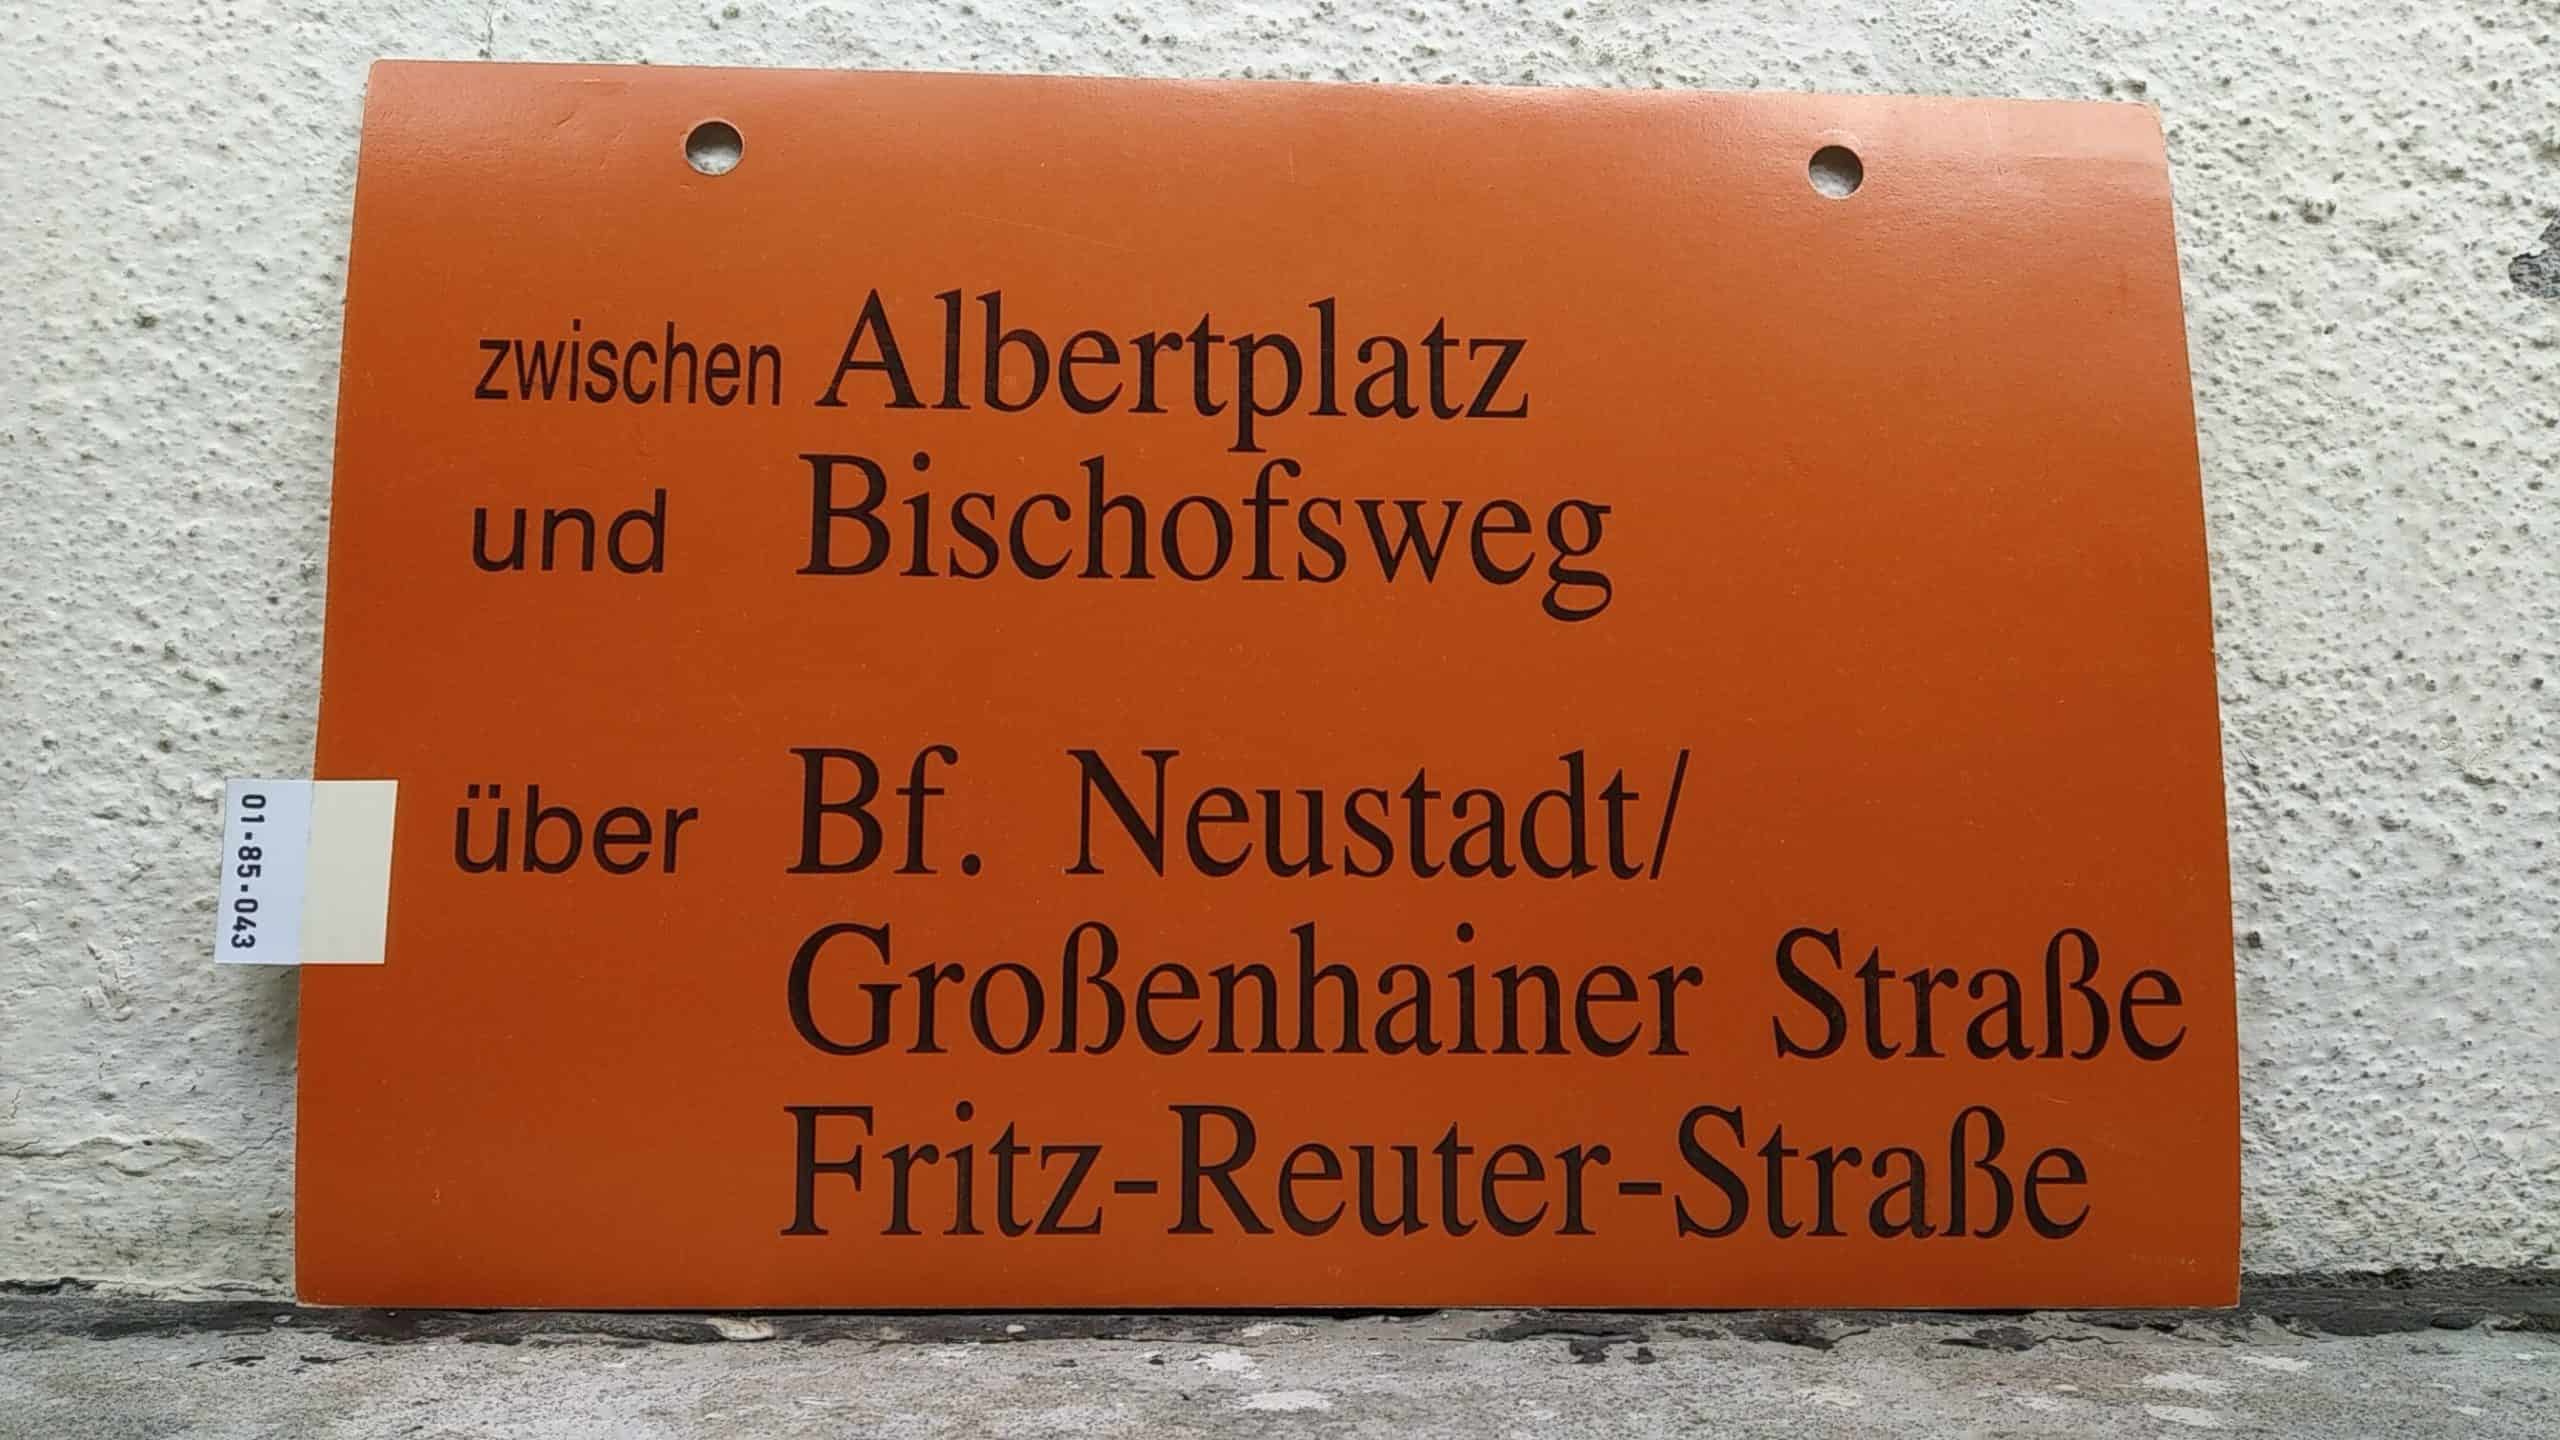 Ein seltenes Straßenbahn-Umleitungsschild aus Dresden: zwischen Albertplatz und Bischofsweg über Bf. Neustadt/ Großenhainer Straße Fritz-Reuter-Straße